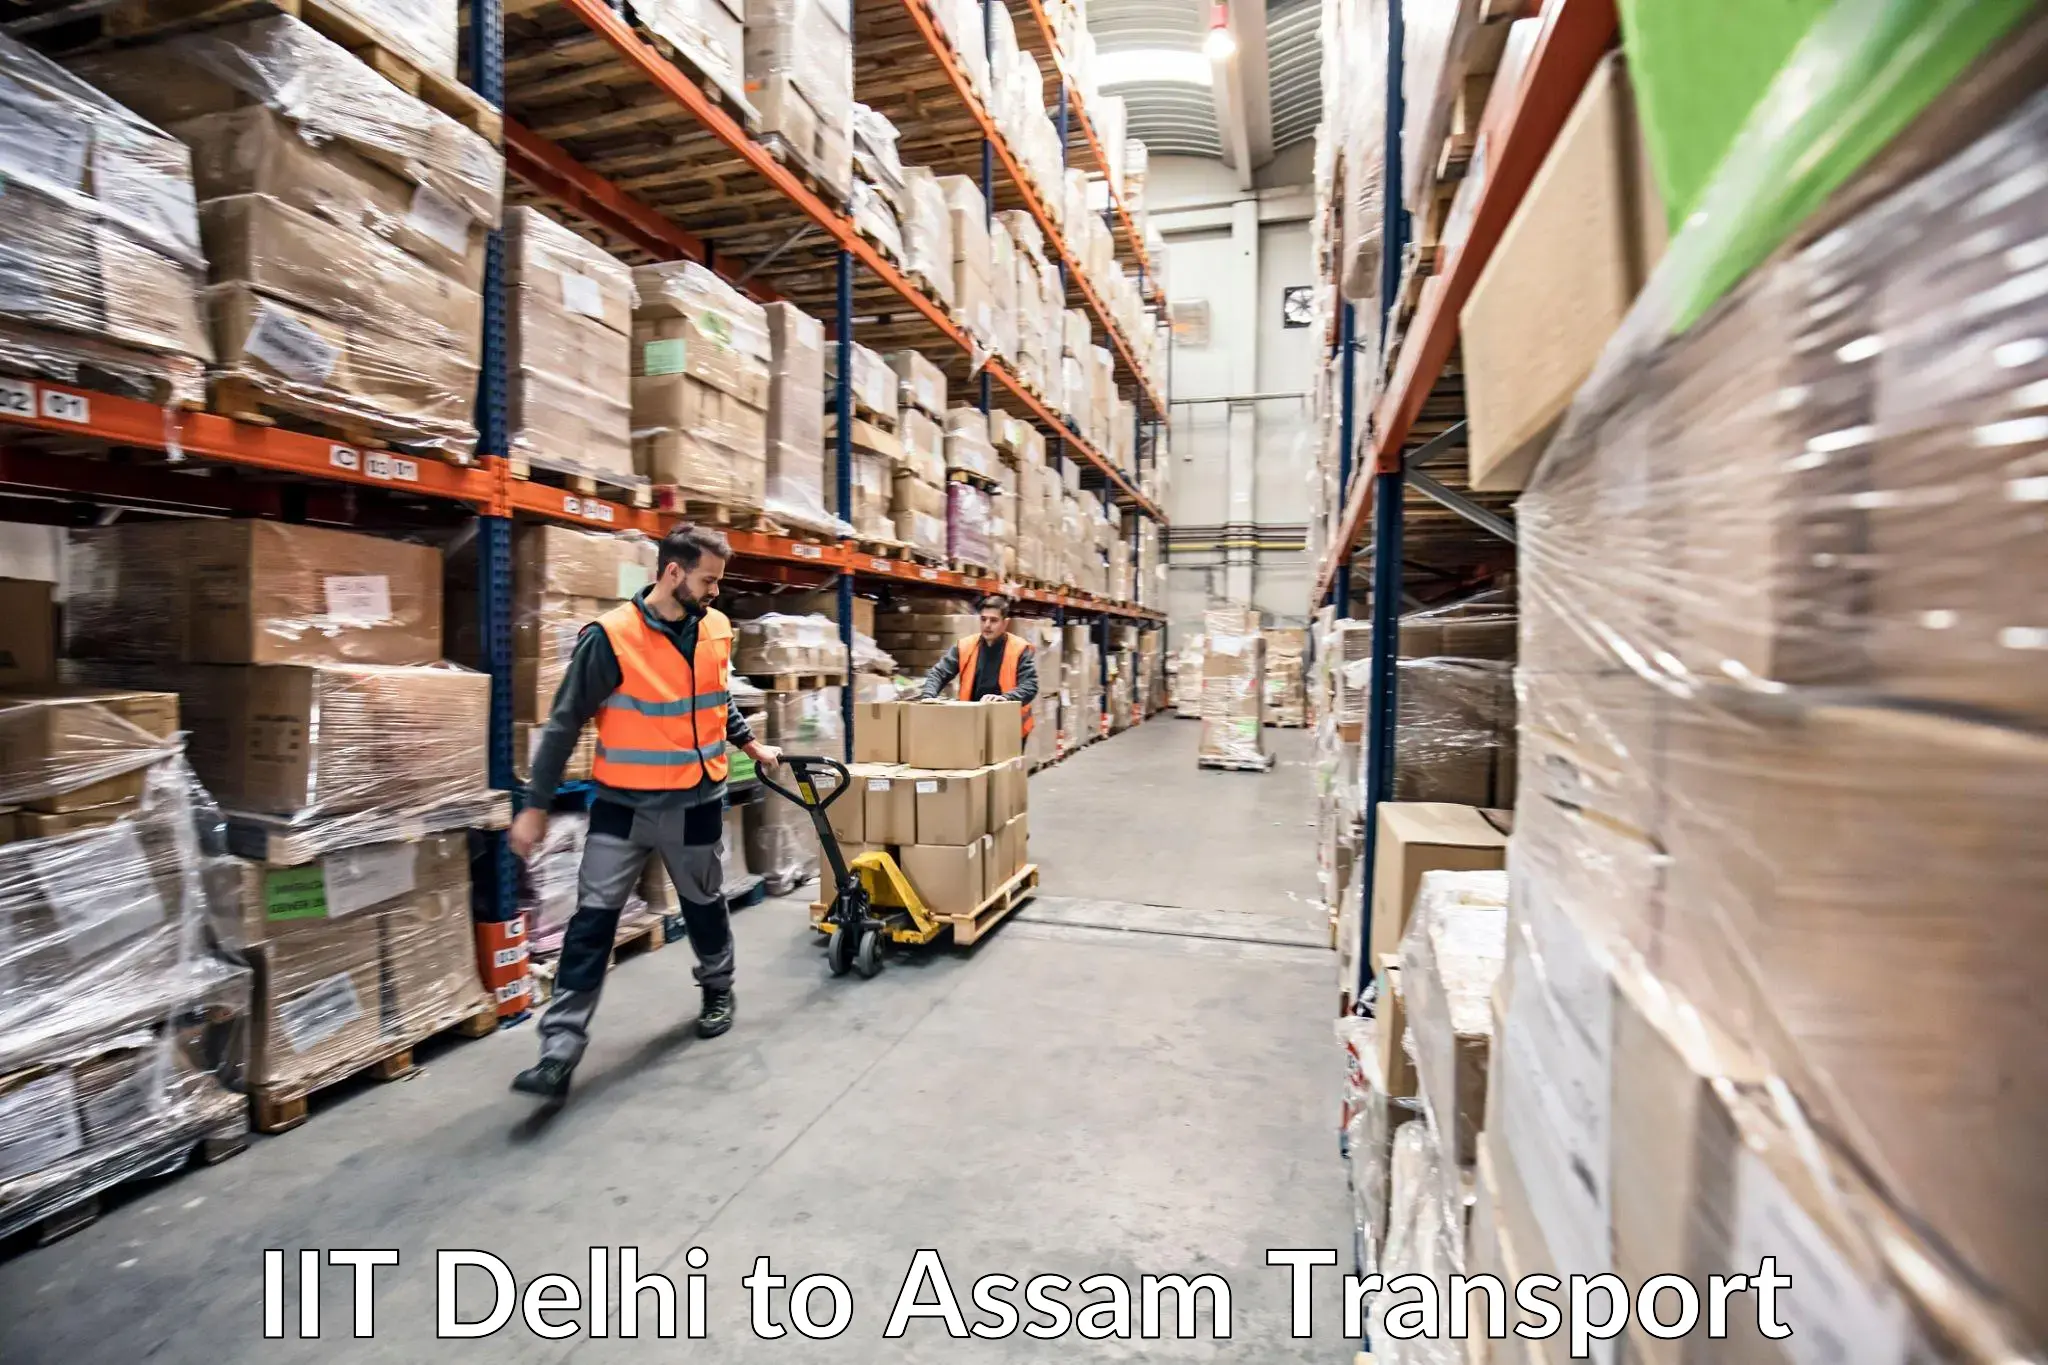 Lorry transport service IIT Delhi to Biswanath